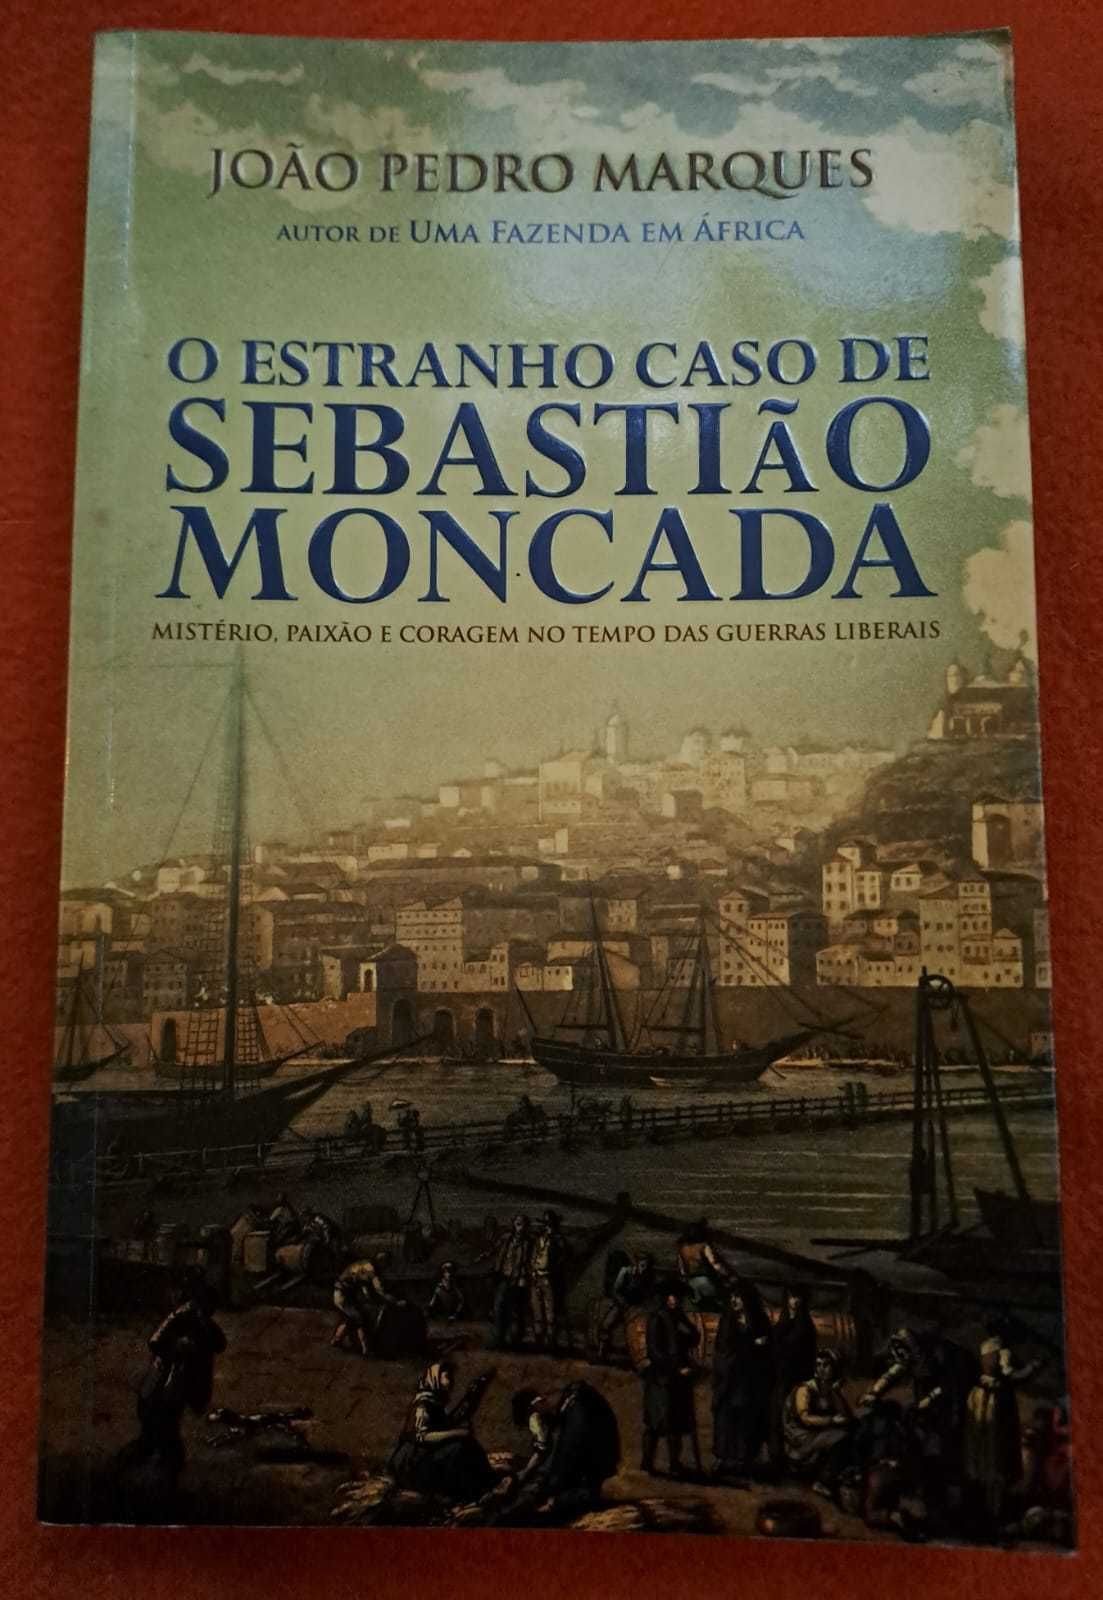 C/Portes - "O Estranho Caso de Sebastião Moncada" - João Pedro Marques